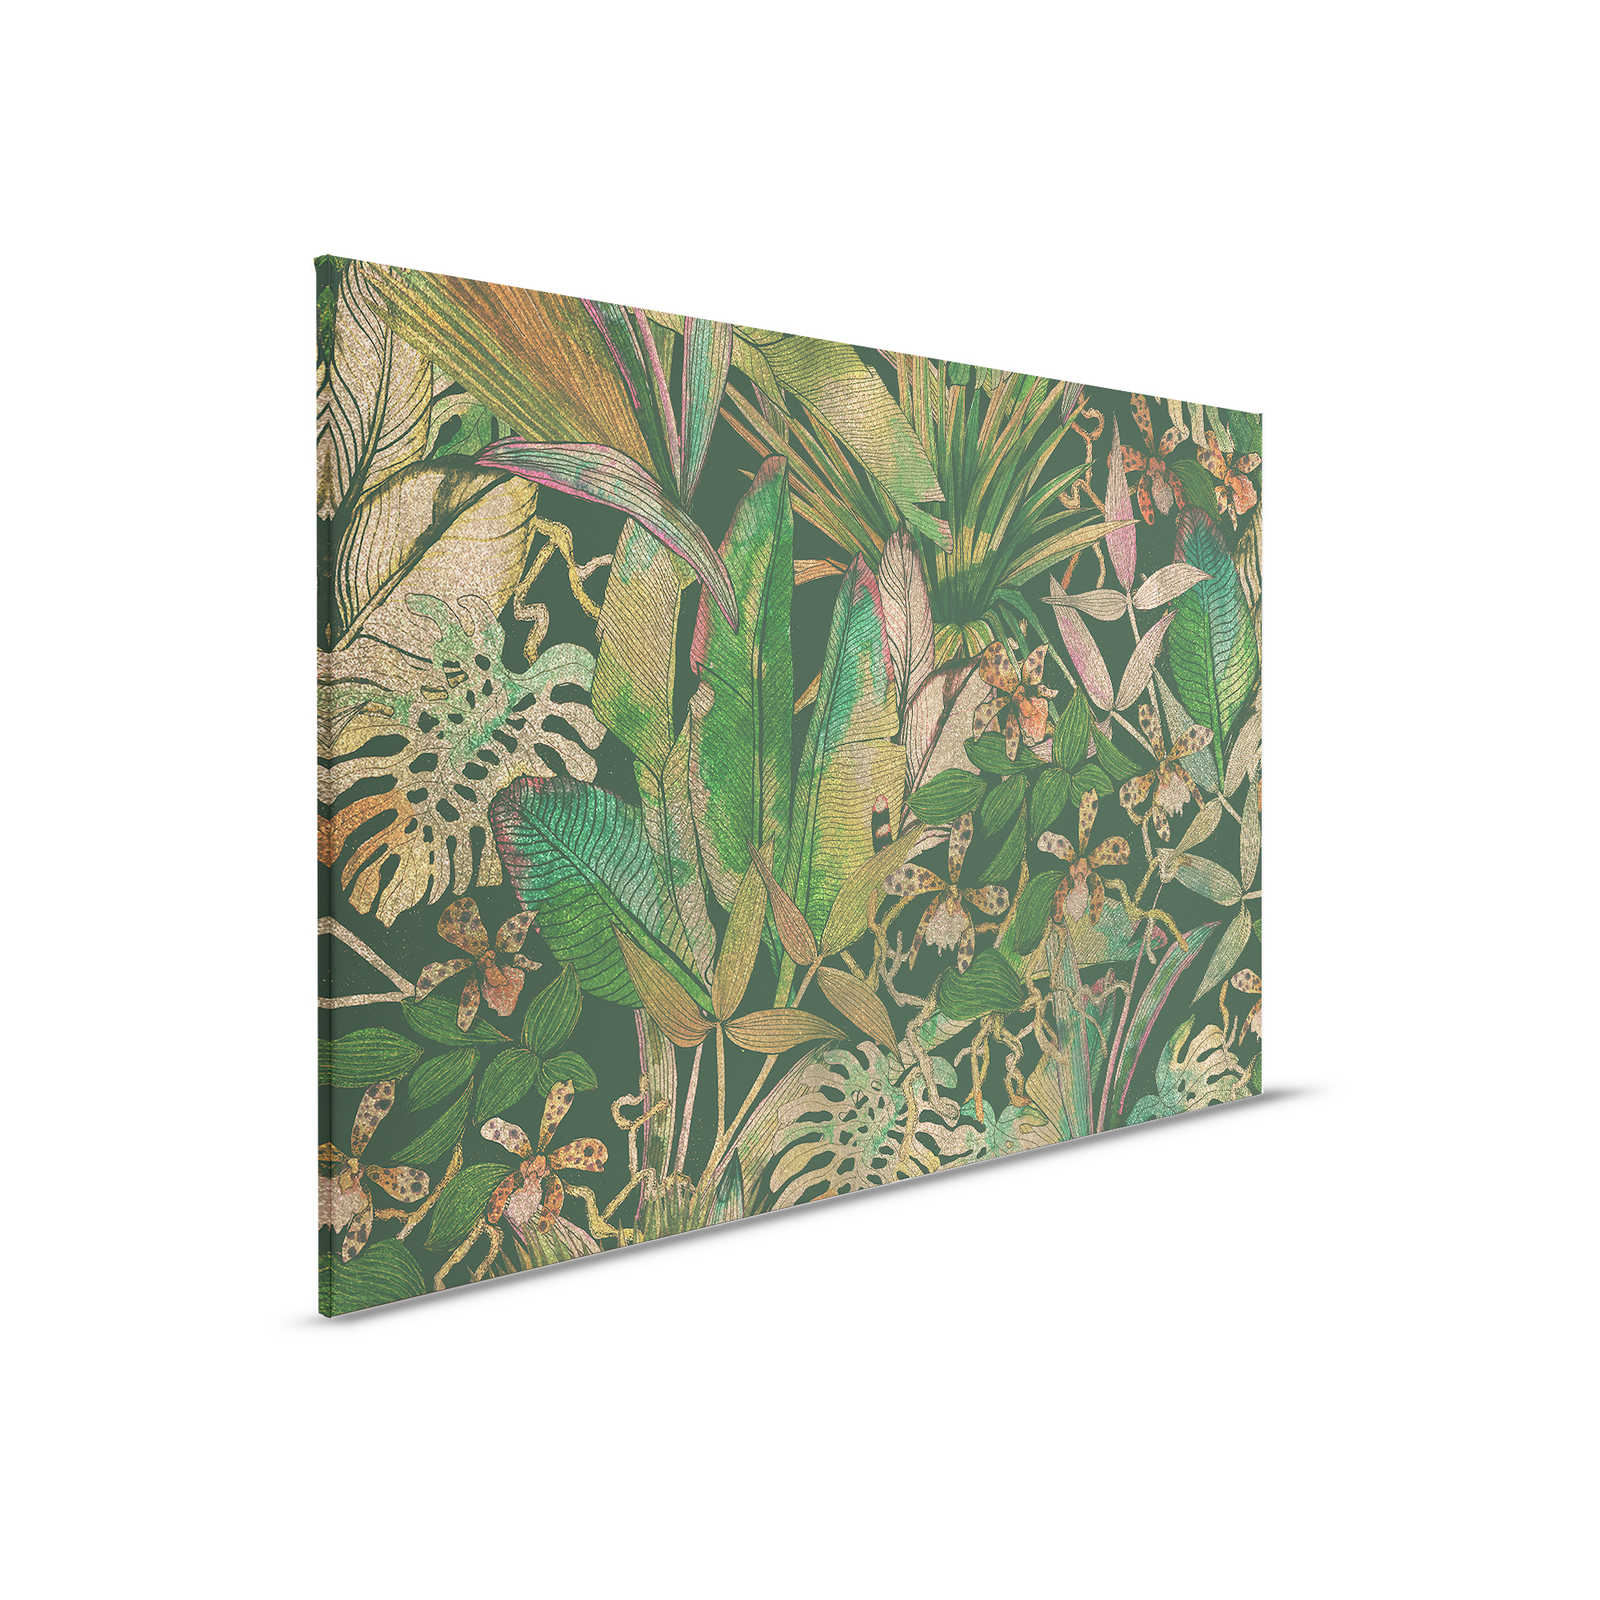 Canvas schilderij Jungle Motief met bladeren & bloemen - 0,90 m x 0,60 m
